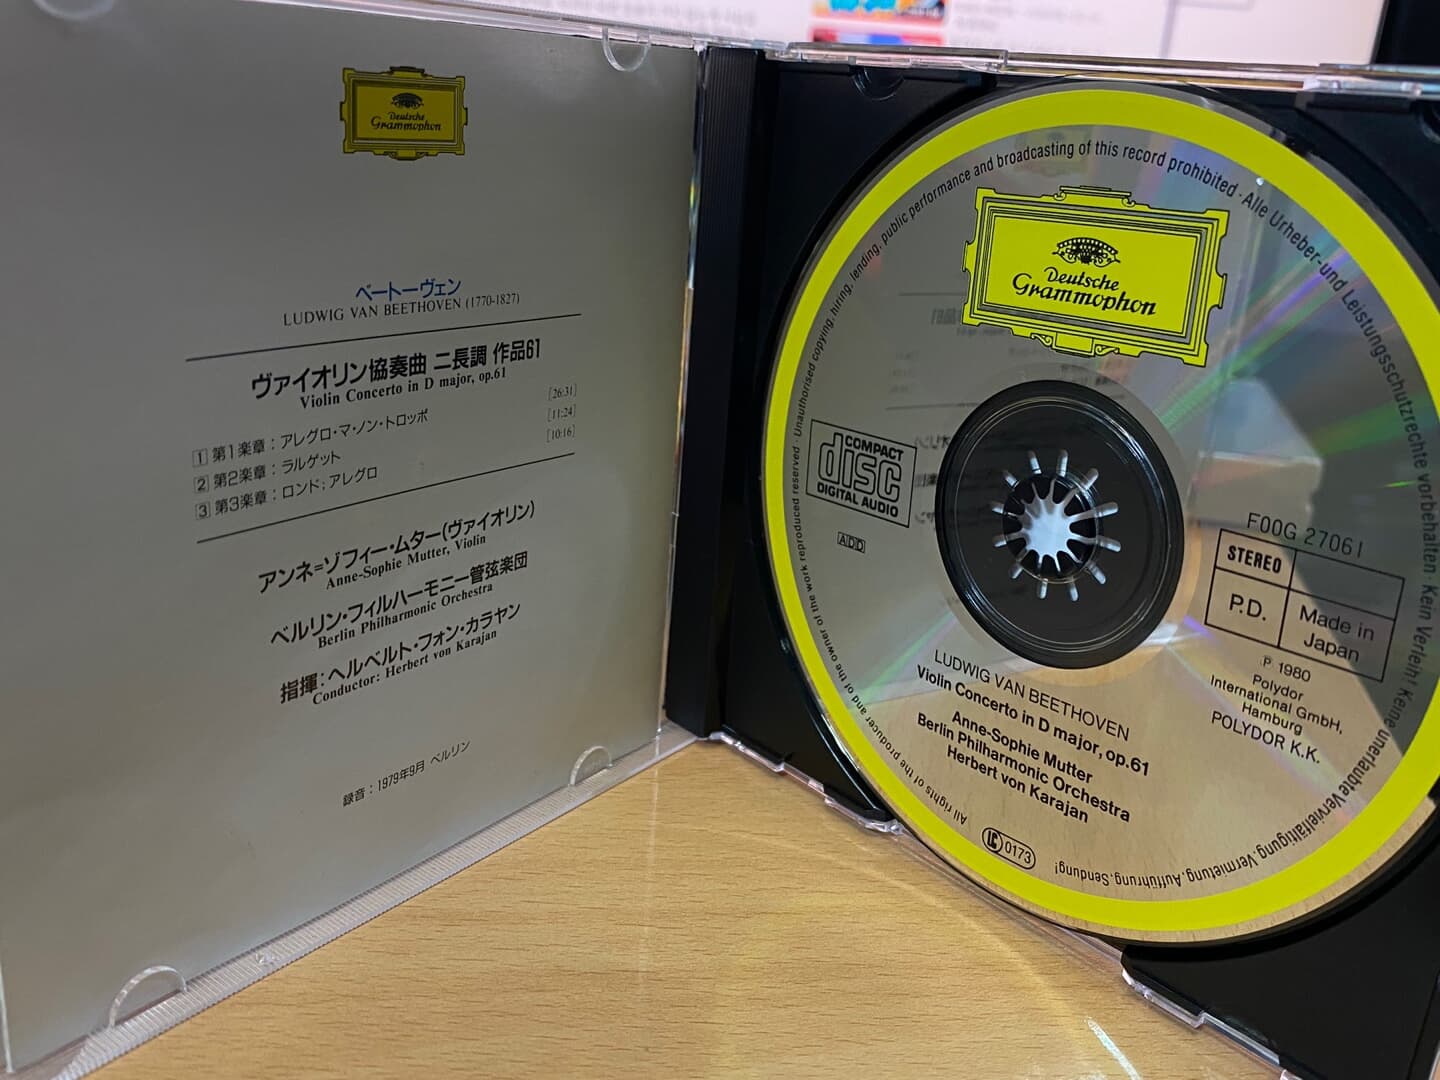 안네 소피 무터,카라얀 - Anne Sophie Mutter,Karajan - Beethoven Violin Concerto [일본발매]